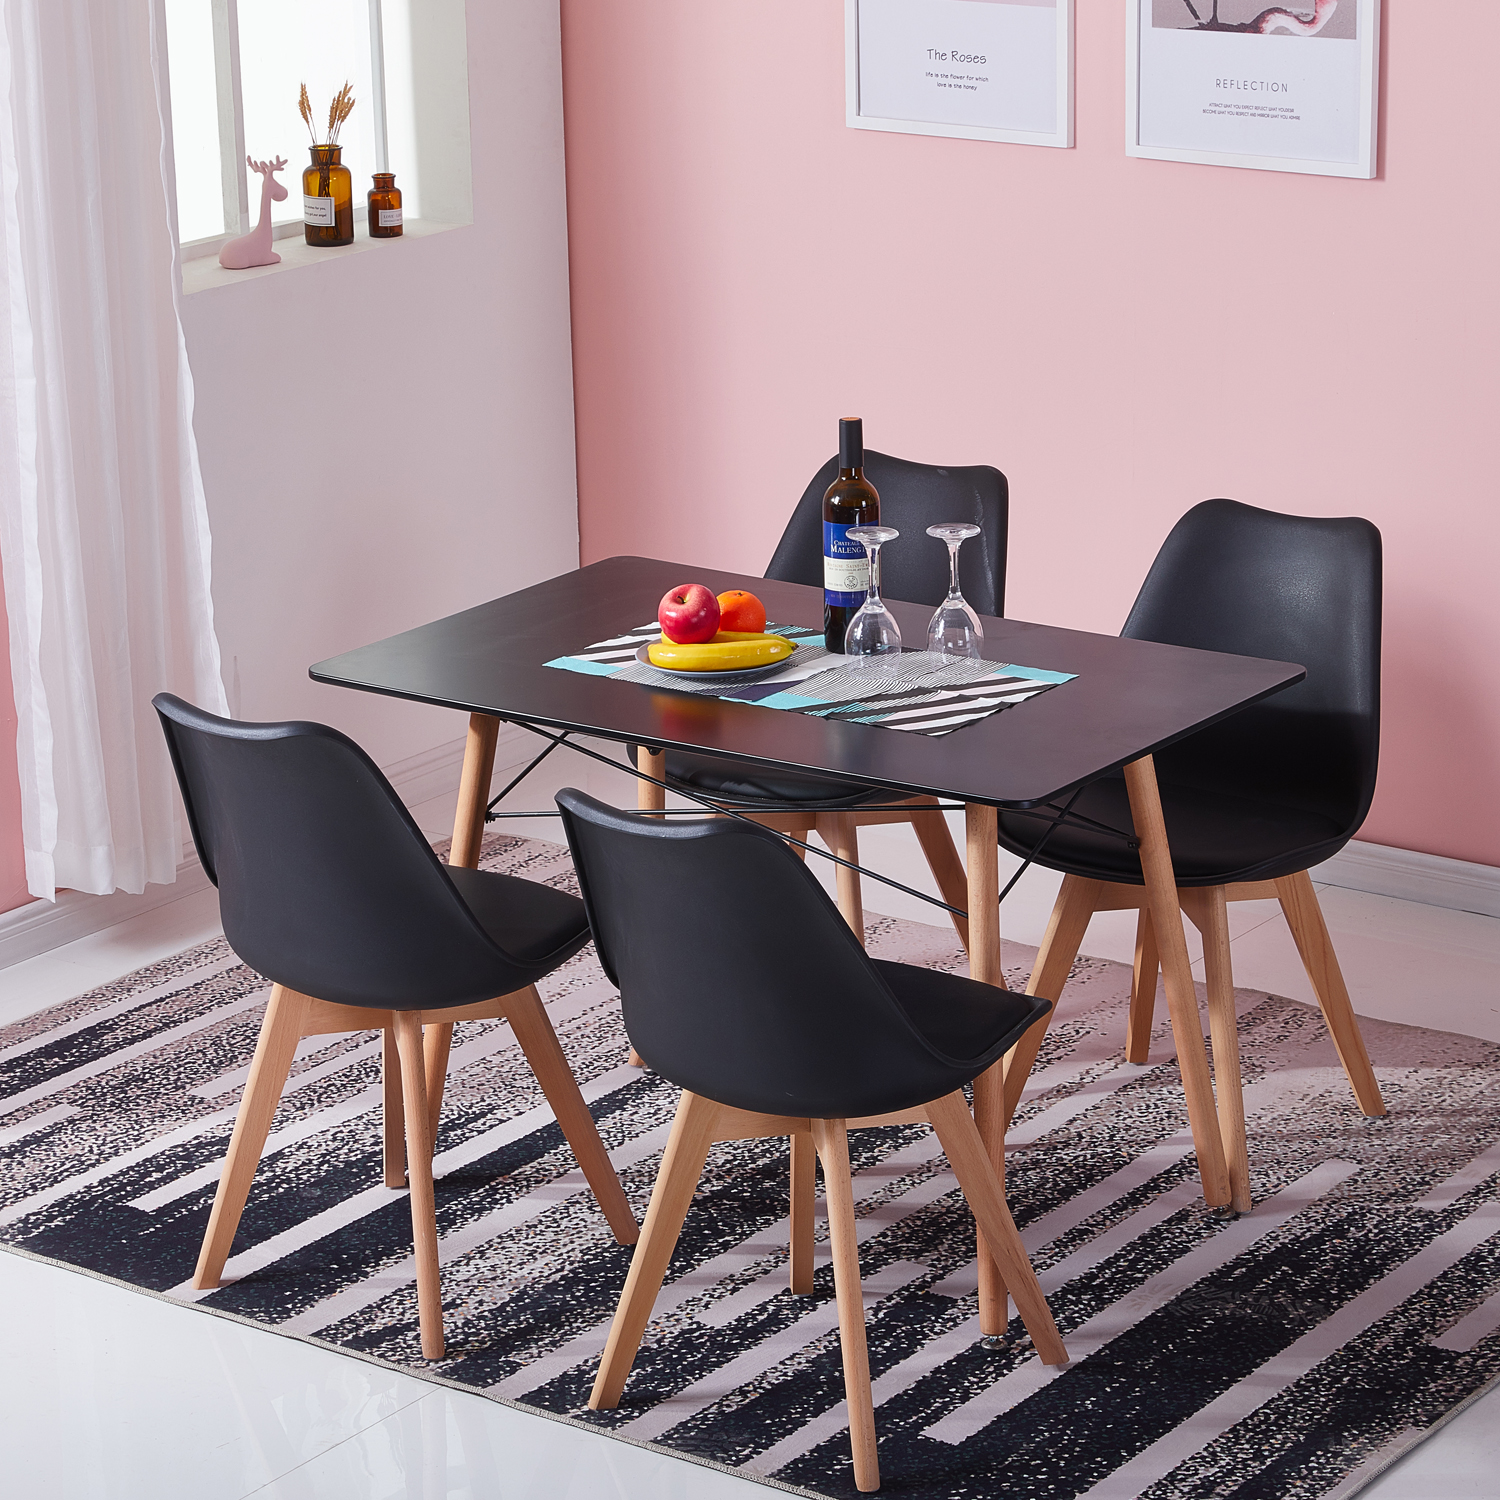 Dora Household Table à Manger Rectangulaire en Bois Salle à Manger Scandinave Table en bois à quatre pieds 110*70*73cm -Noir